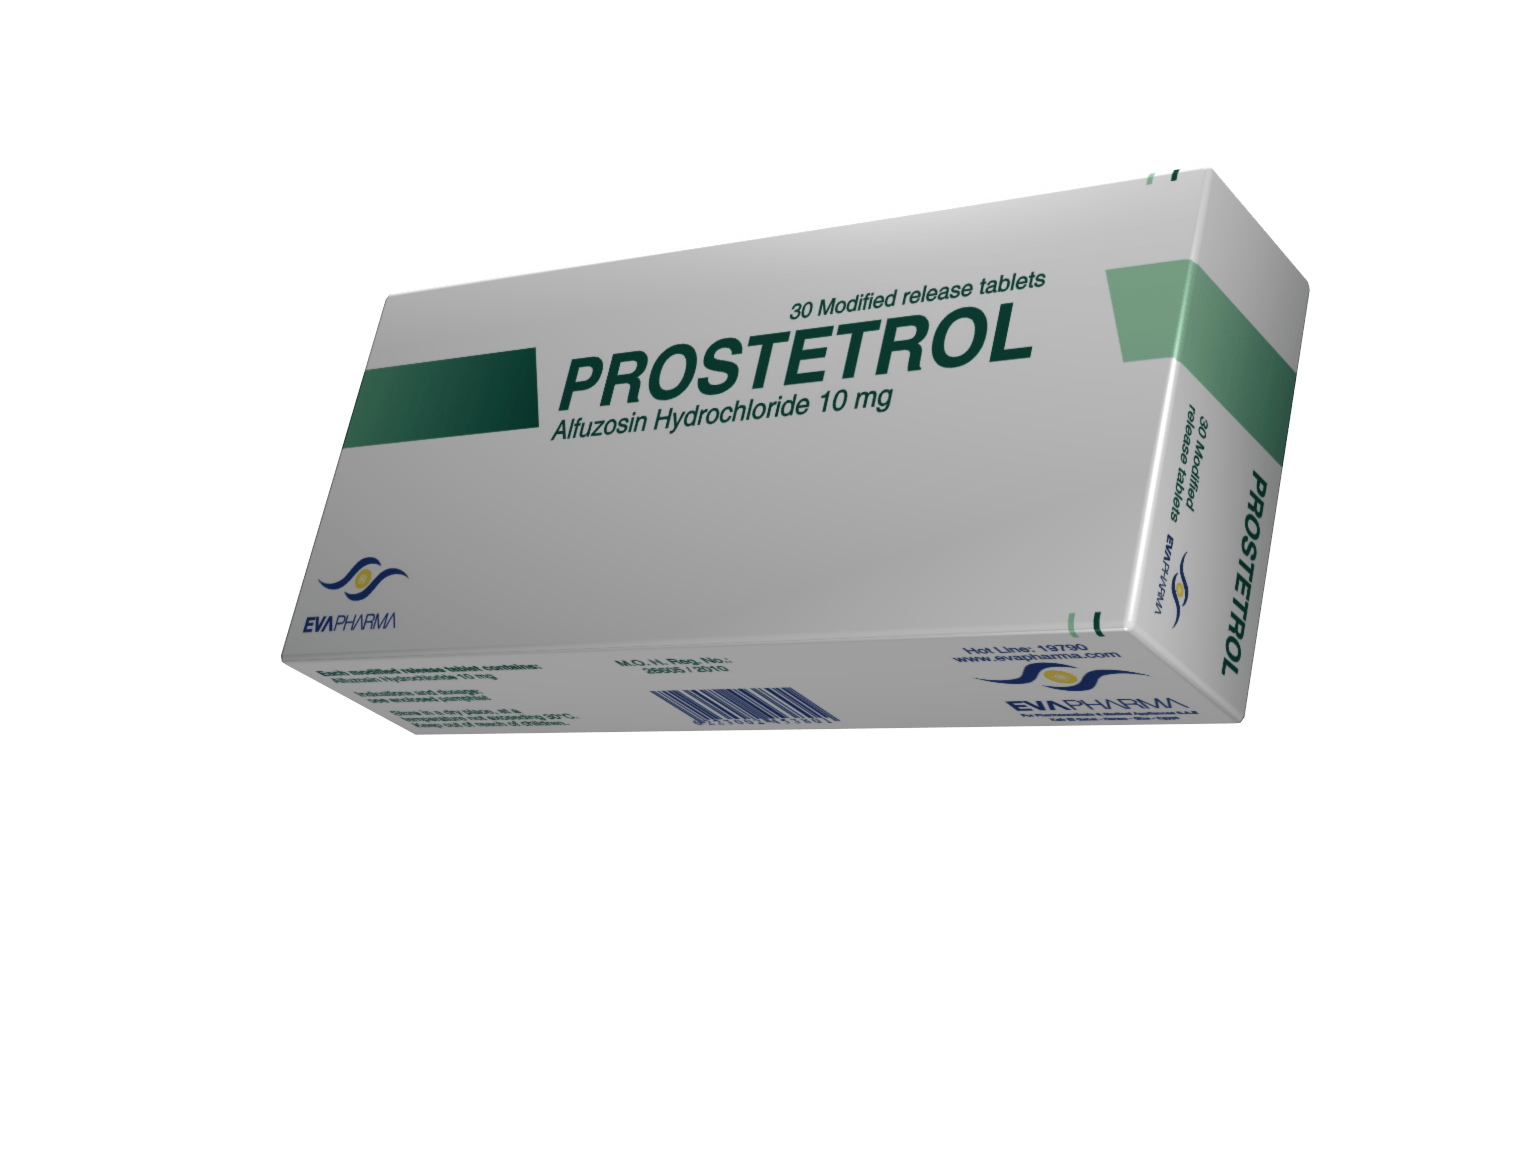 أقراص بروستانورم Prostanorm دواعي الاستخدام والآثار الجانبية له